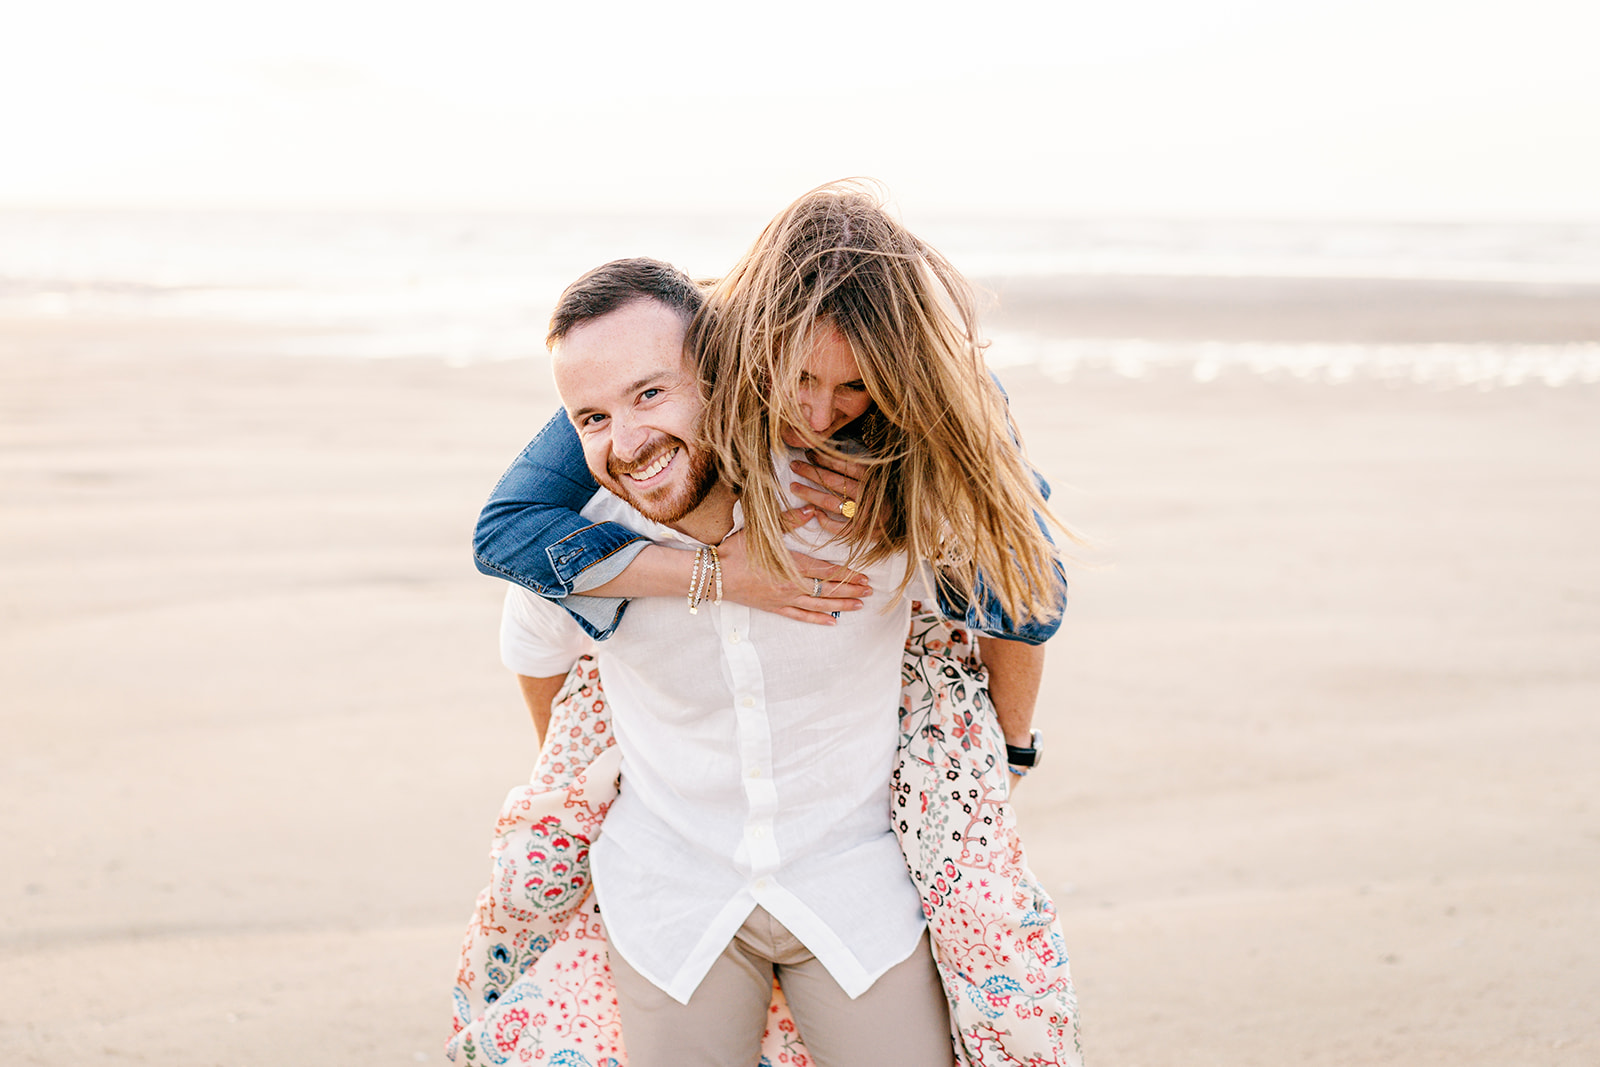 Séance couple sur la plage en Normandie, complicité des futurs mariés